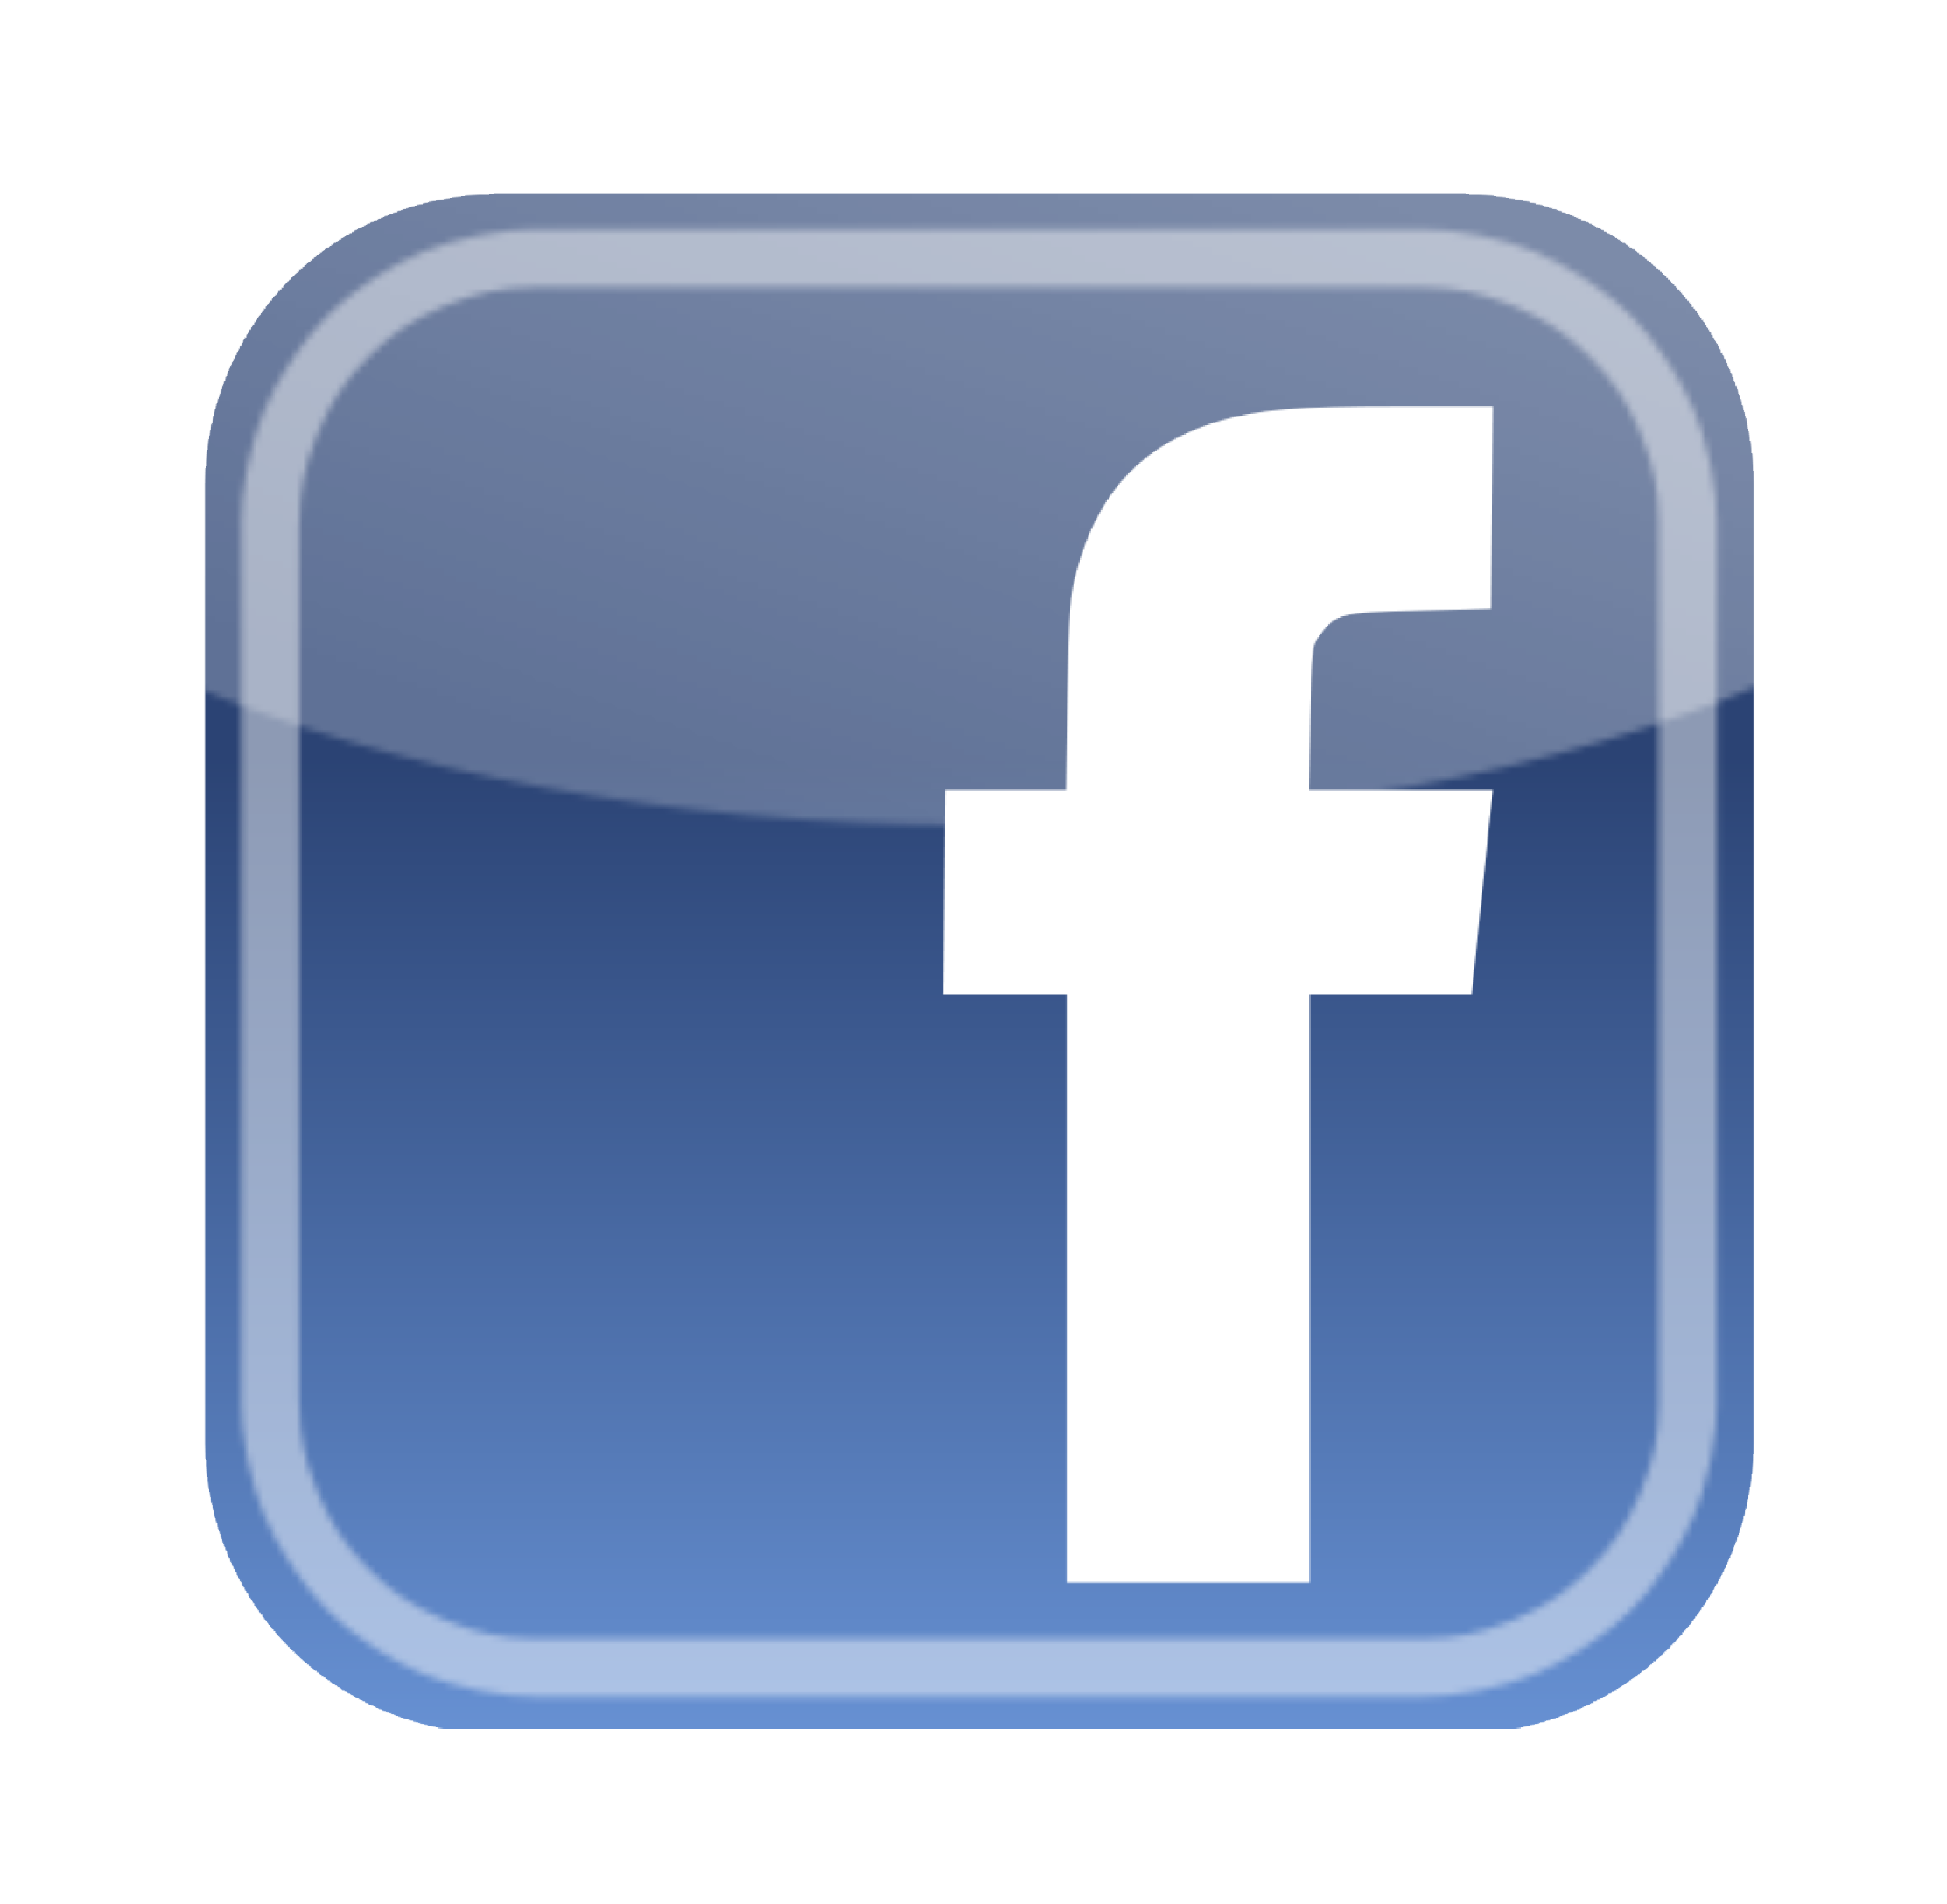 Logo Facebook Png Logo Facebook Transparent Background Freeiconspng